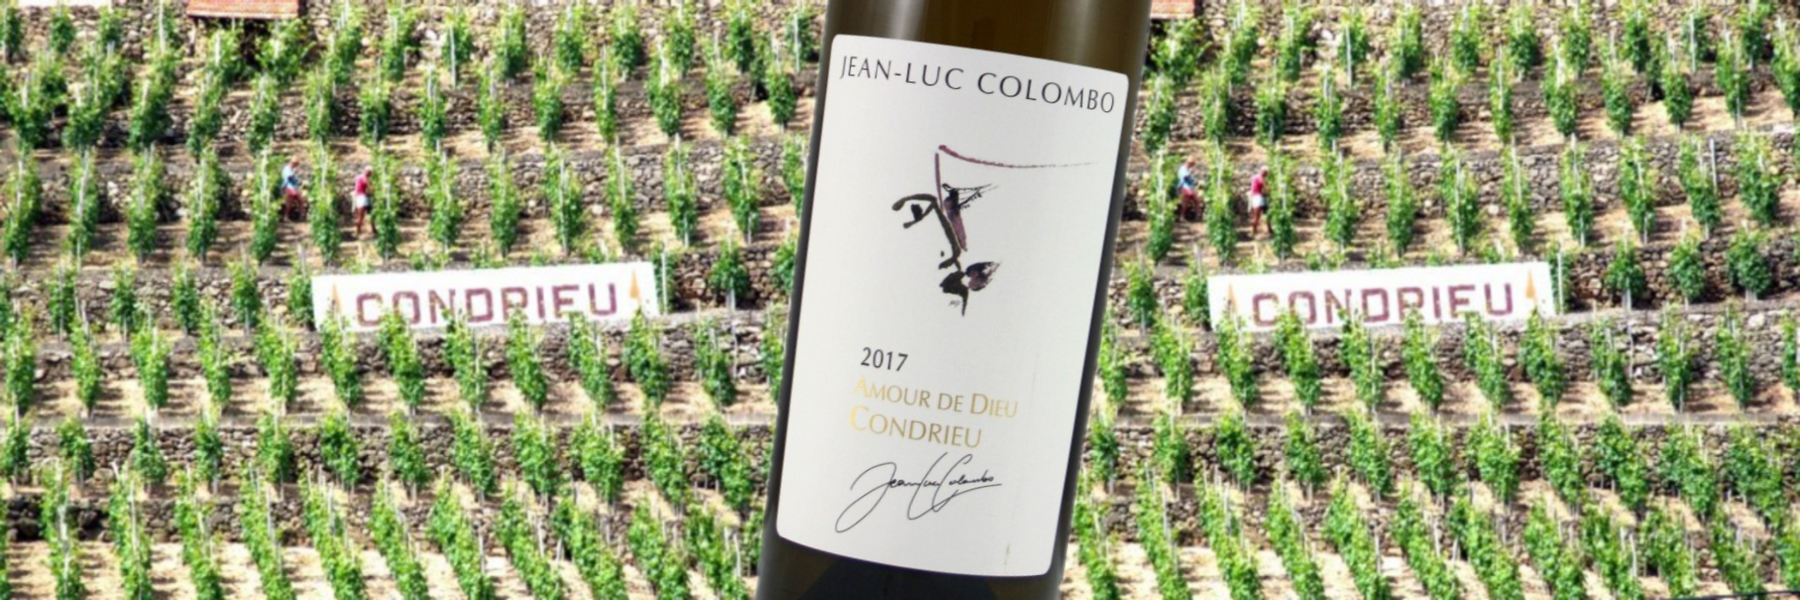 Condrieu Vineyards & Colombo Condrieu